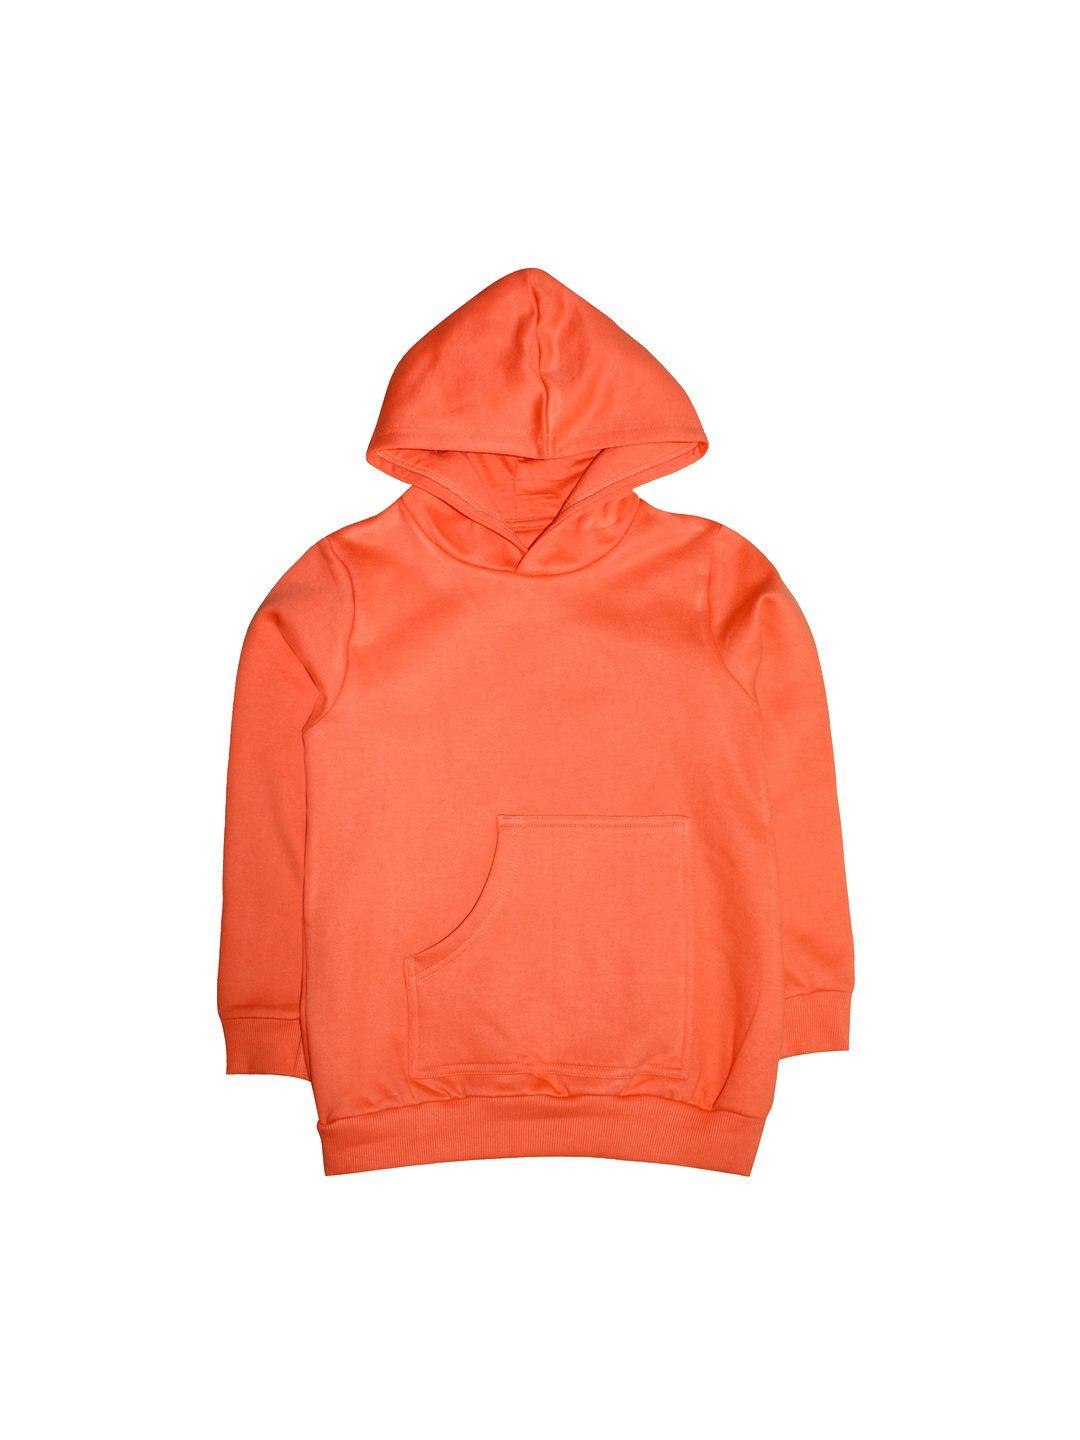 kiddopanti unisex kids orange hooded sweatshirt